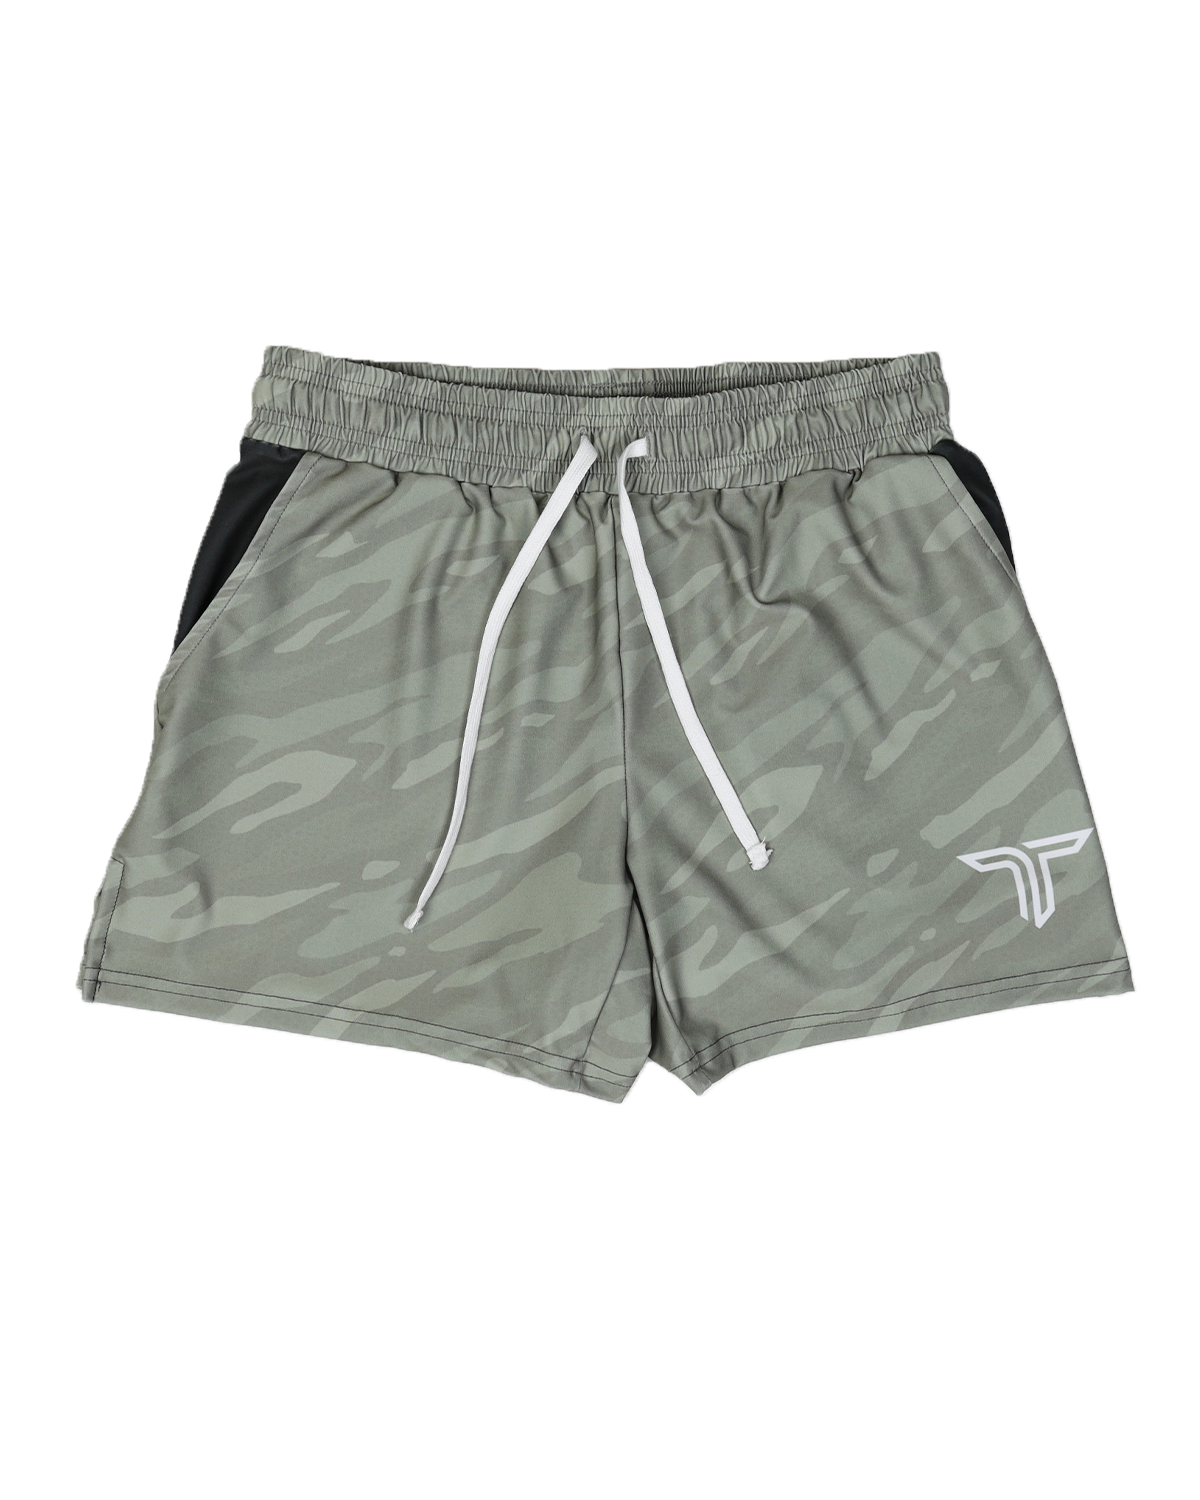 TD-GS-004 360° Custom Gym Shorts (5"&7“ Inseam)